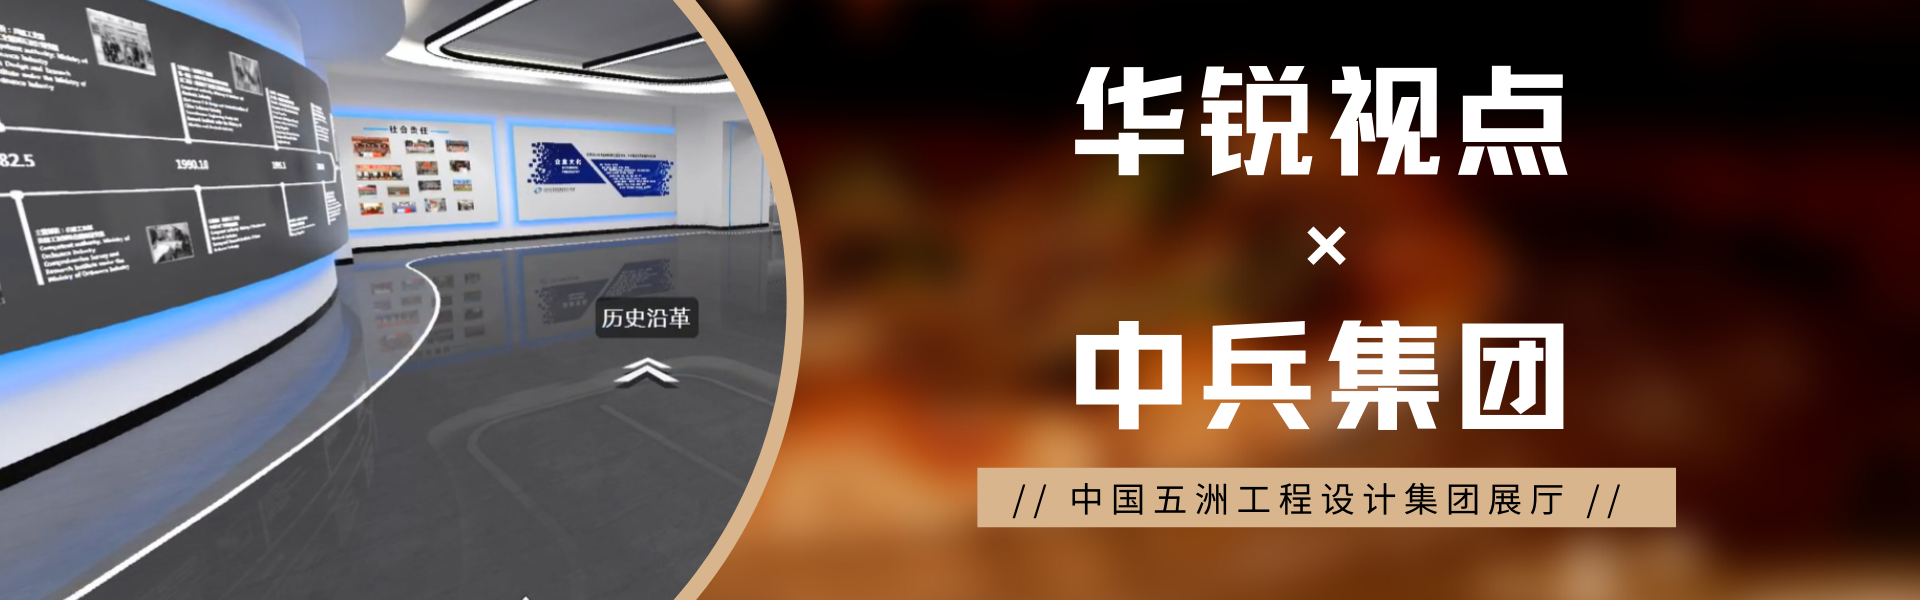 【案例展示】中国五洲工程设计集团3D展厅